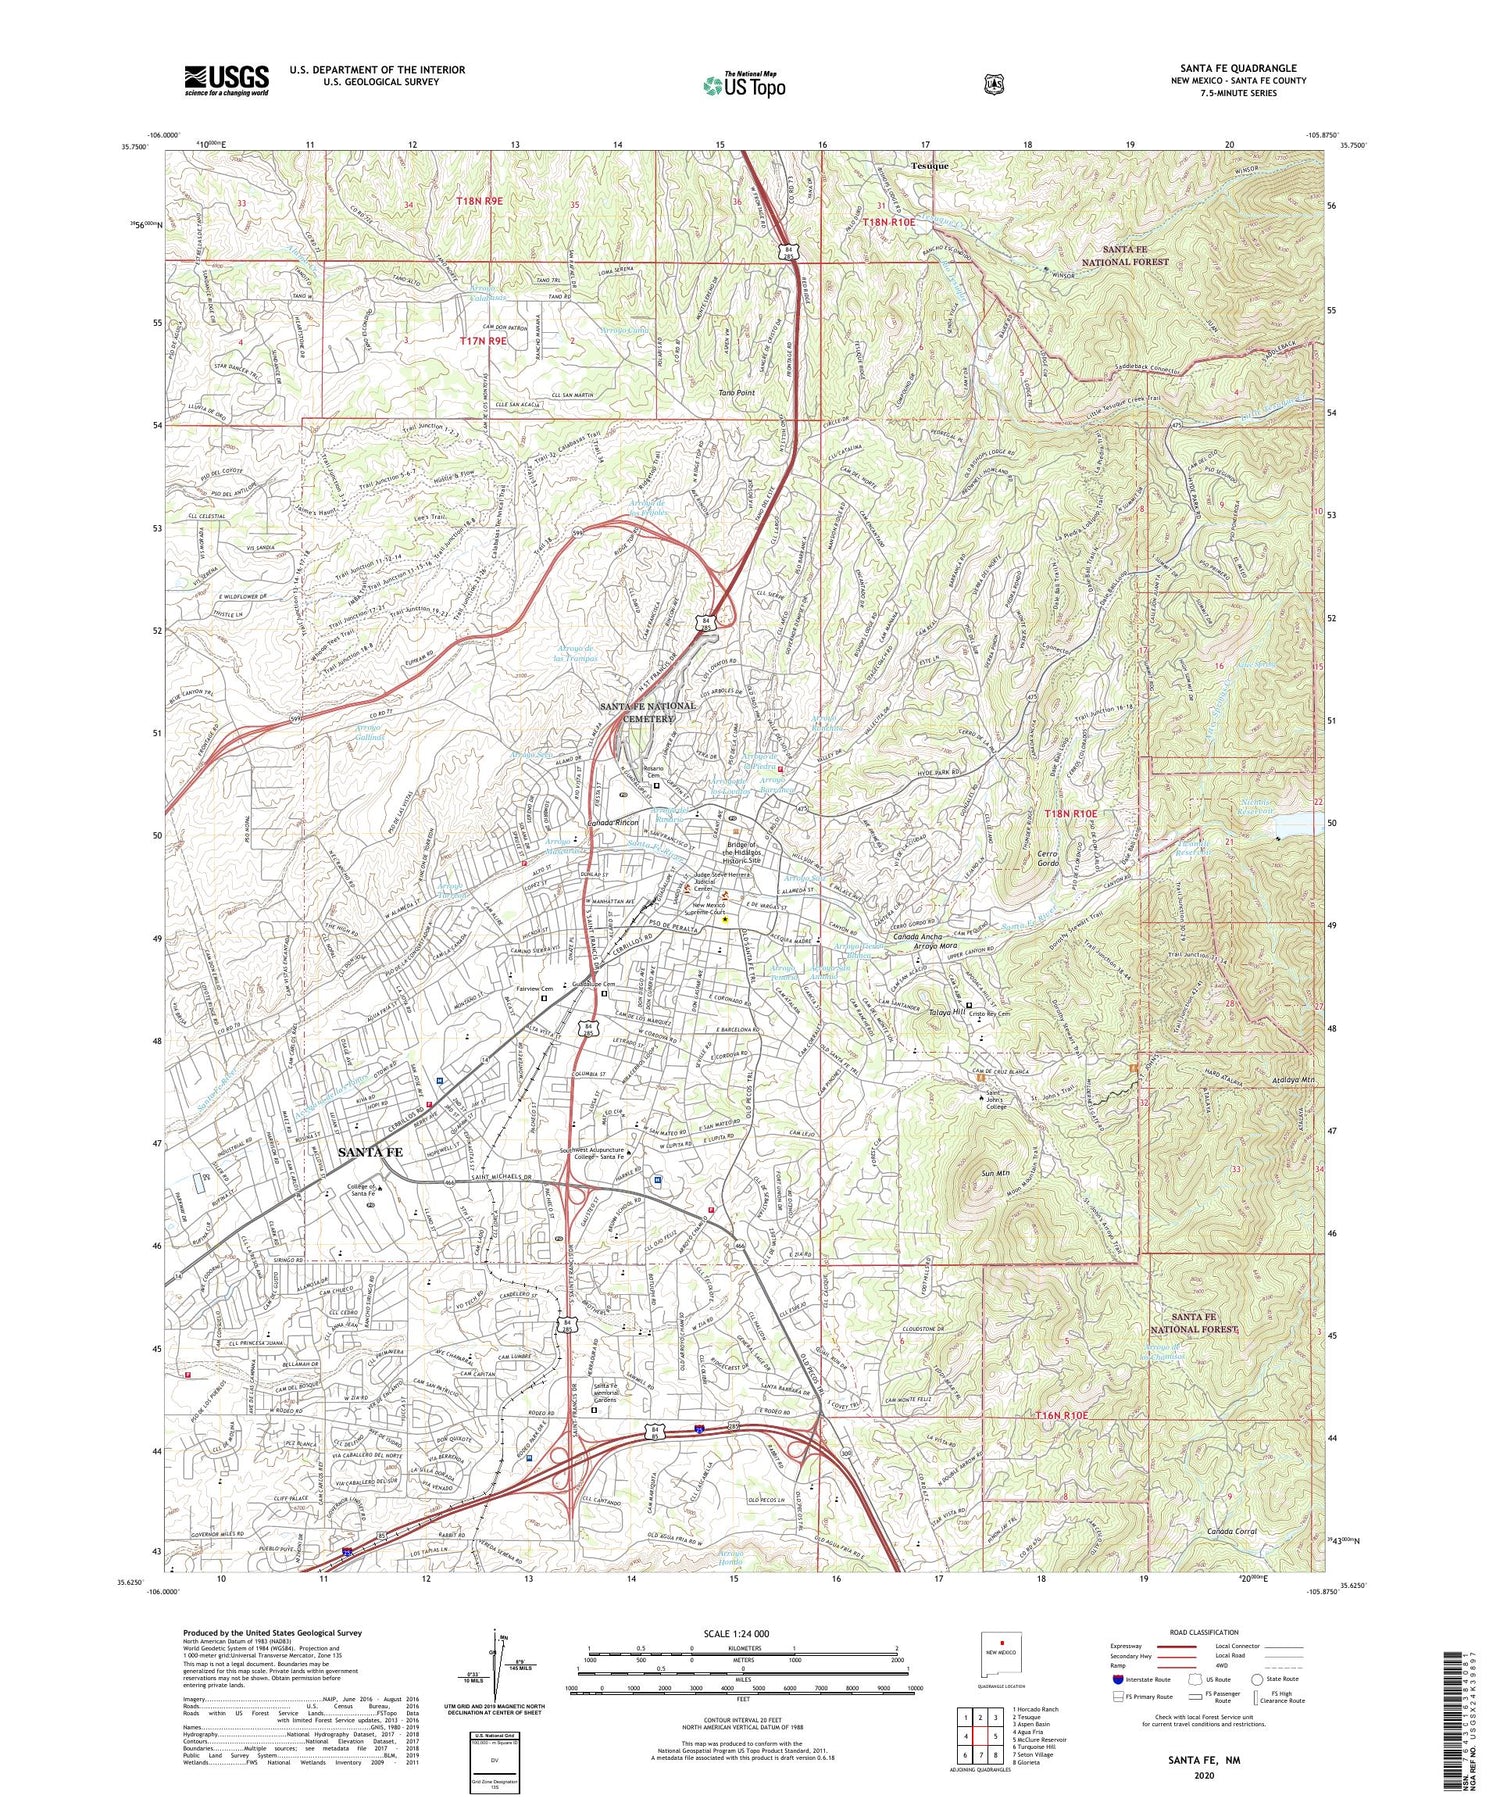 Santa Fe New Mexico US Topo Map Image